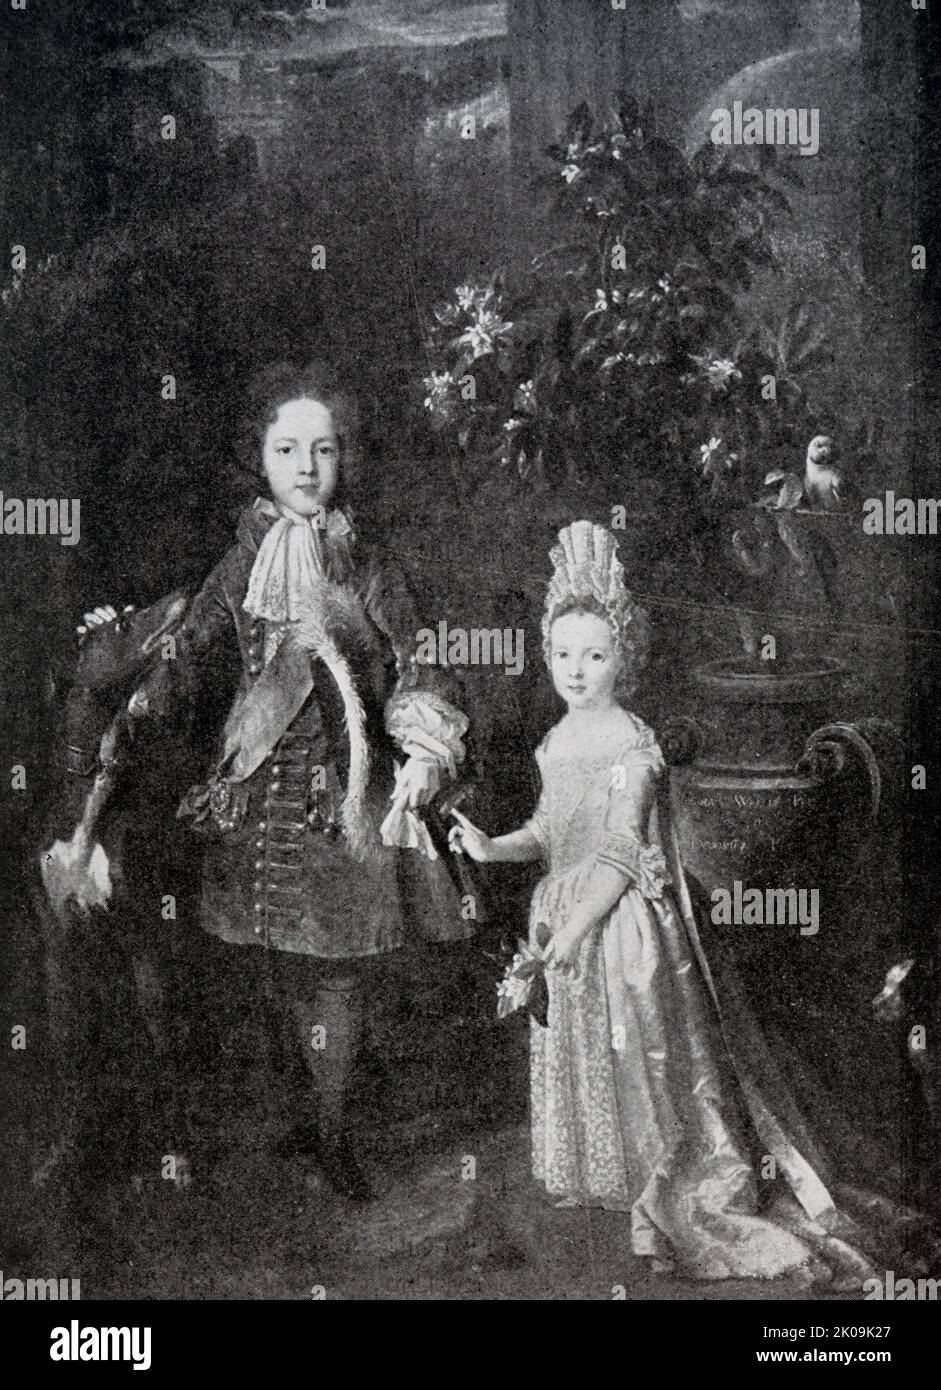 Enfants de James II Mary II (30 avril 1662 - 28 décembre 1694) était reine d'Angleterre, d'Écosse et d'Irlande, corégnant avec son mari, William III & II, de 1689 jusqu'à sa mort en 1694. Anne (6 février 1665 - 1 août 1714) a été reine d'Angleterre, d'Écosse et d'Irlande entre le 8 mars 1702 et le 1 mai 1707. Elle continua à régner en tant que reine de Grande-Bretagne et d'Irlande jusqu'à sa mort en 1714. Banque D'Images